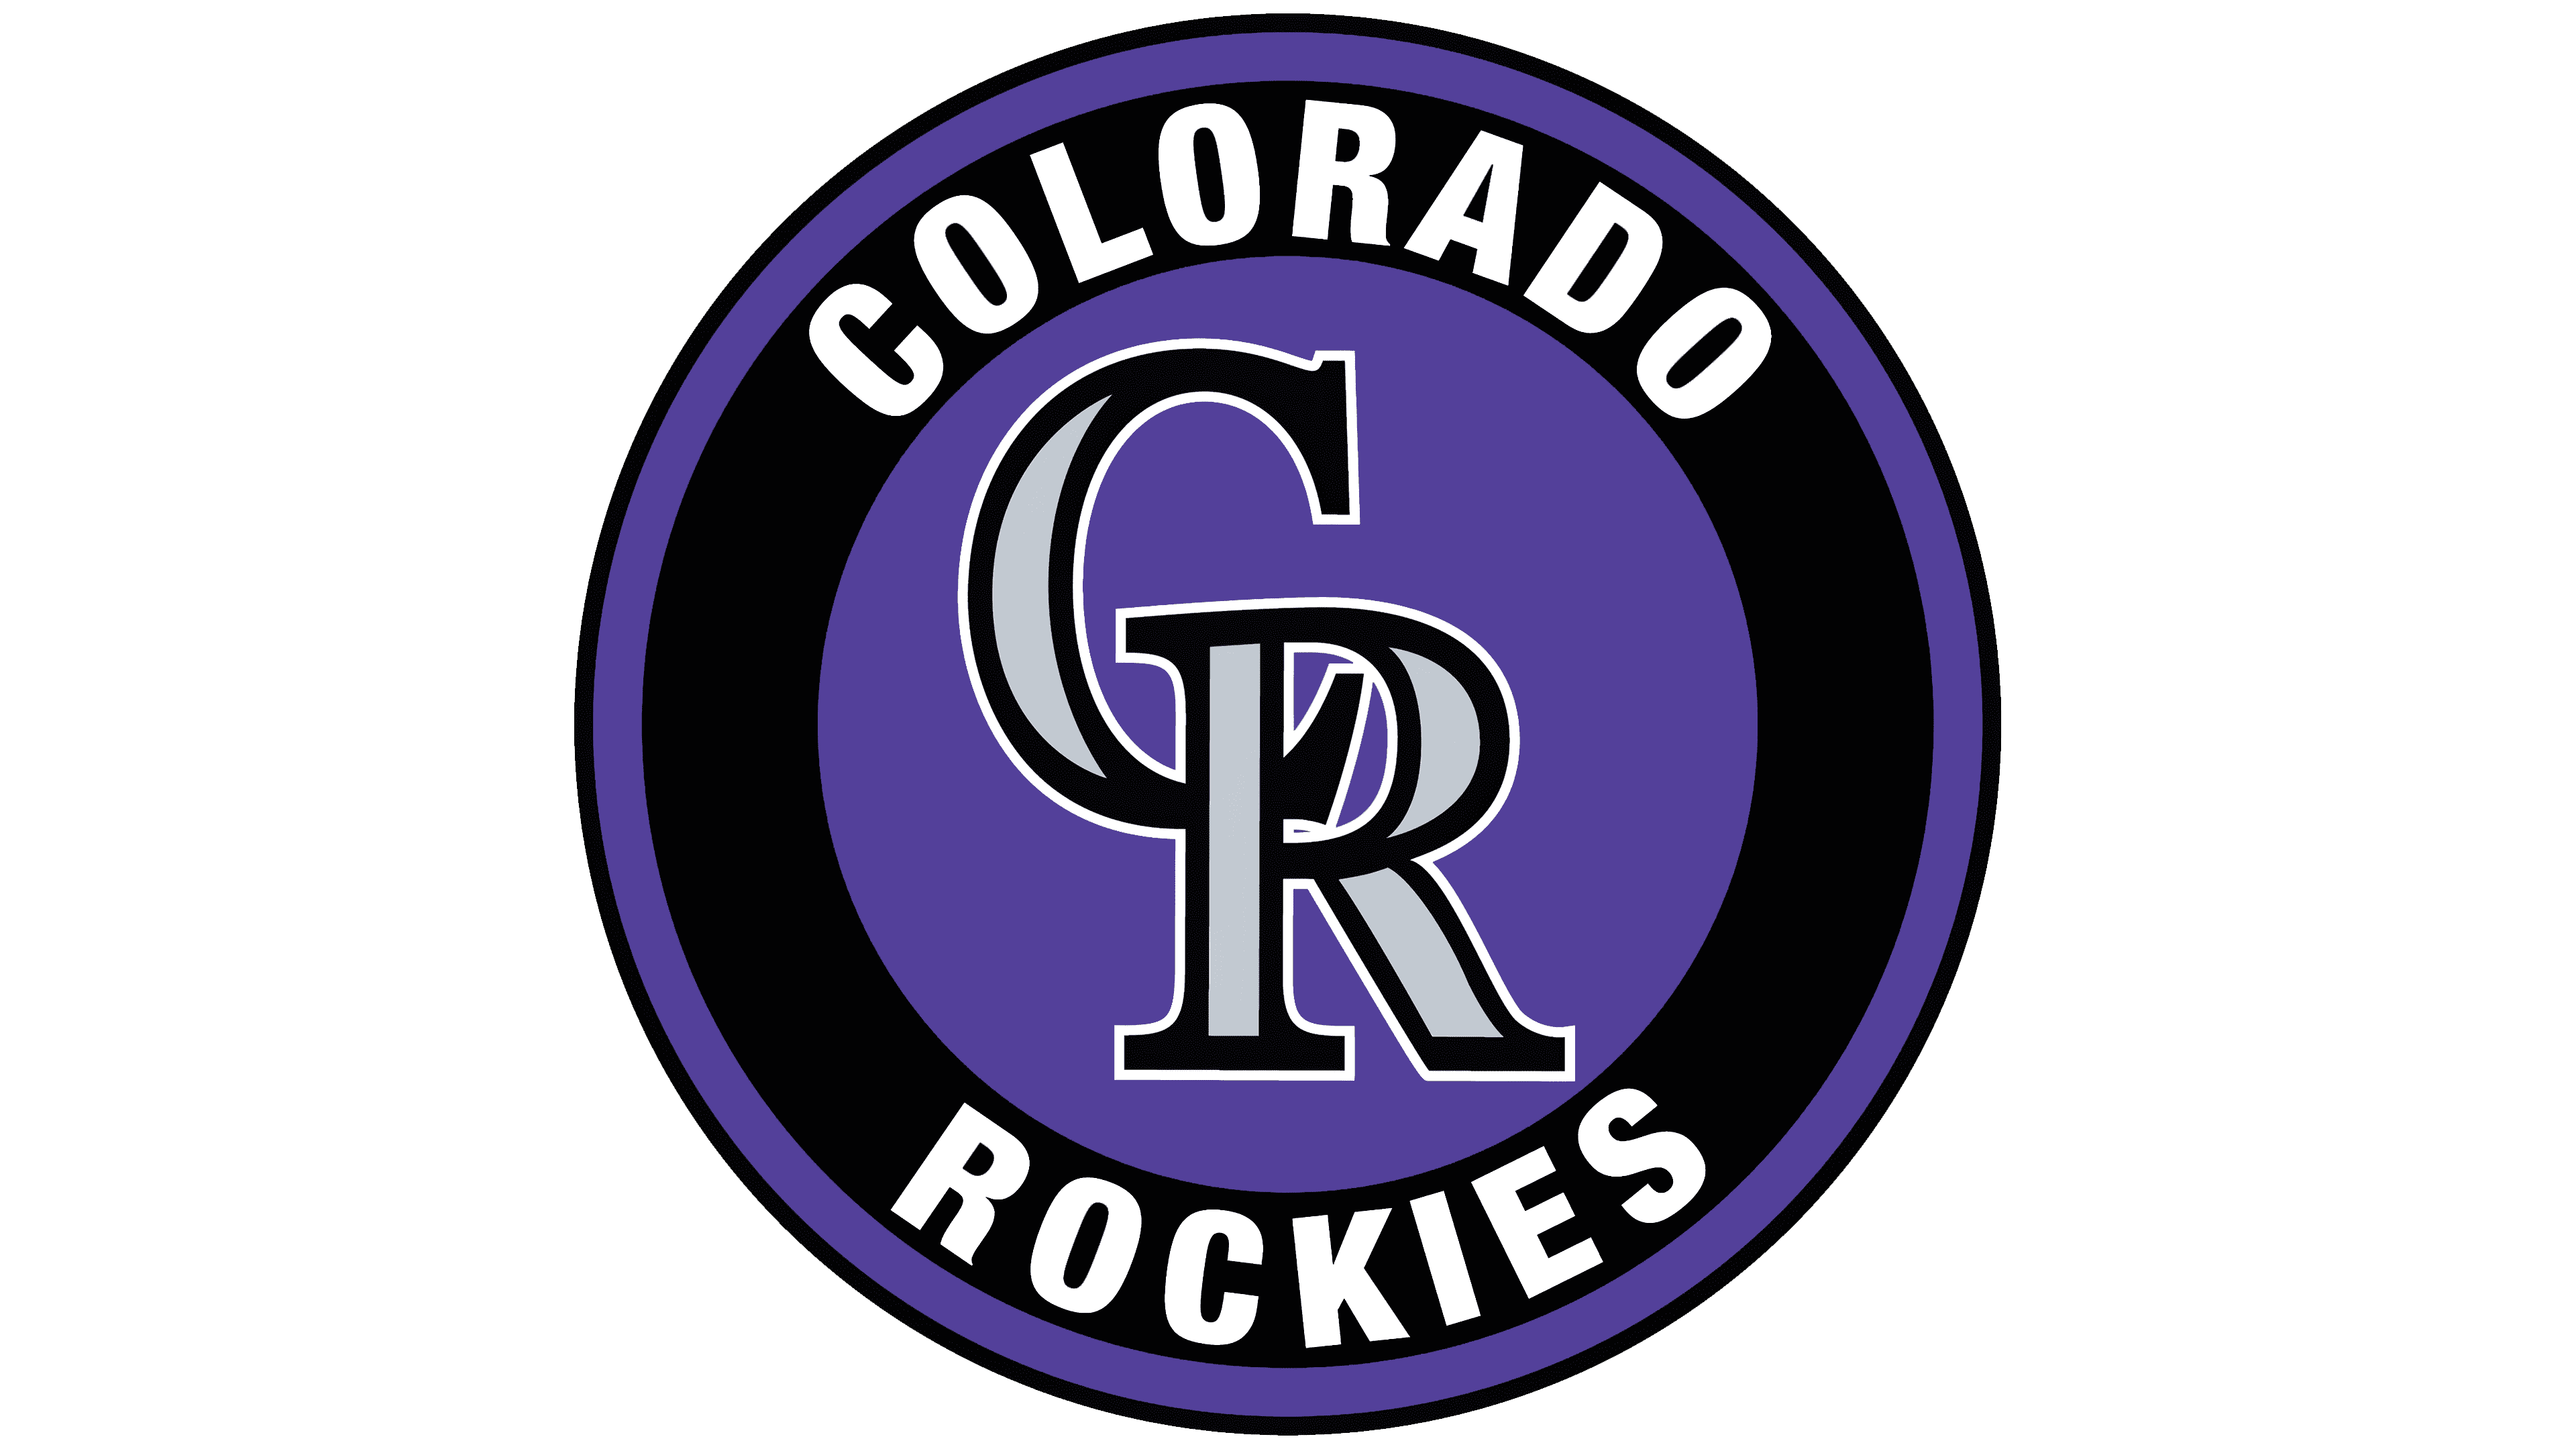 Colorado Rockies Team Colors  HEX, RGB, CMYK, PANTONE COLOR CODES OF  SPORTS TEAMS